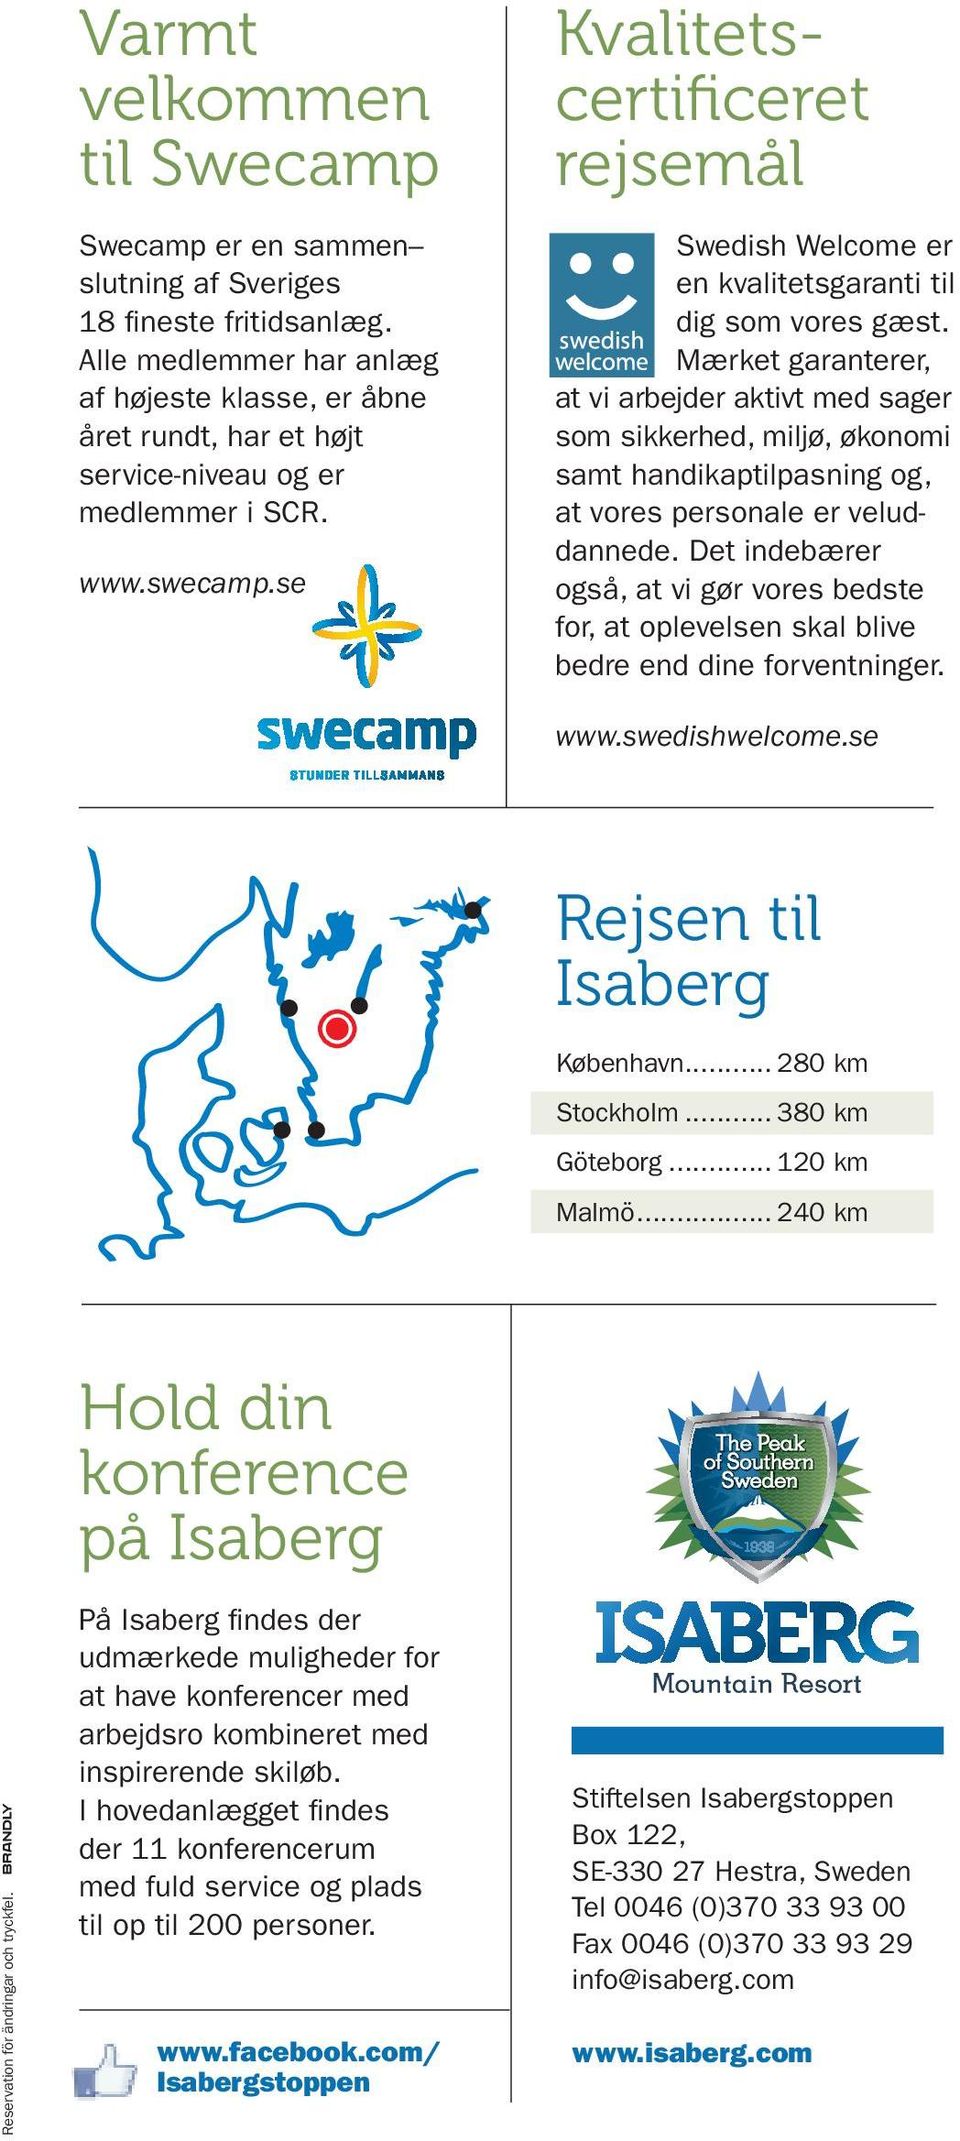 se Kvalitetscertificeret rejsemål Swedish Welcome er en kvalitets garanti til dig som vores gæst.